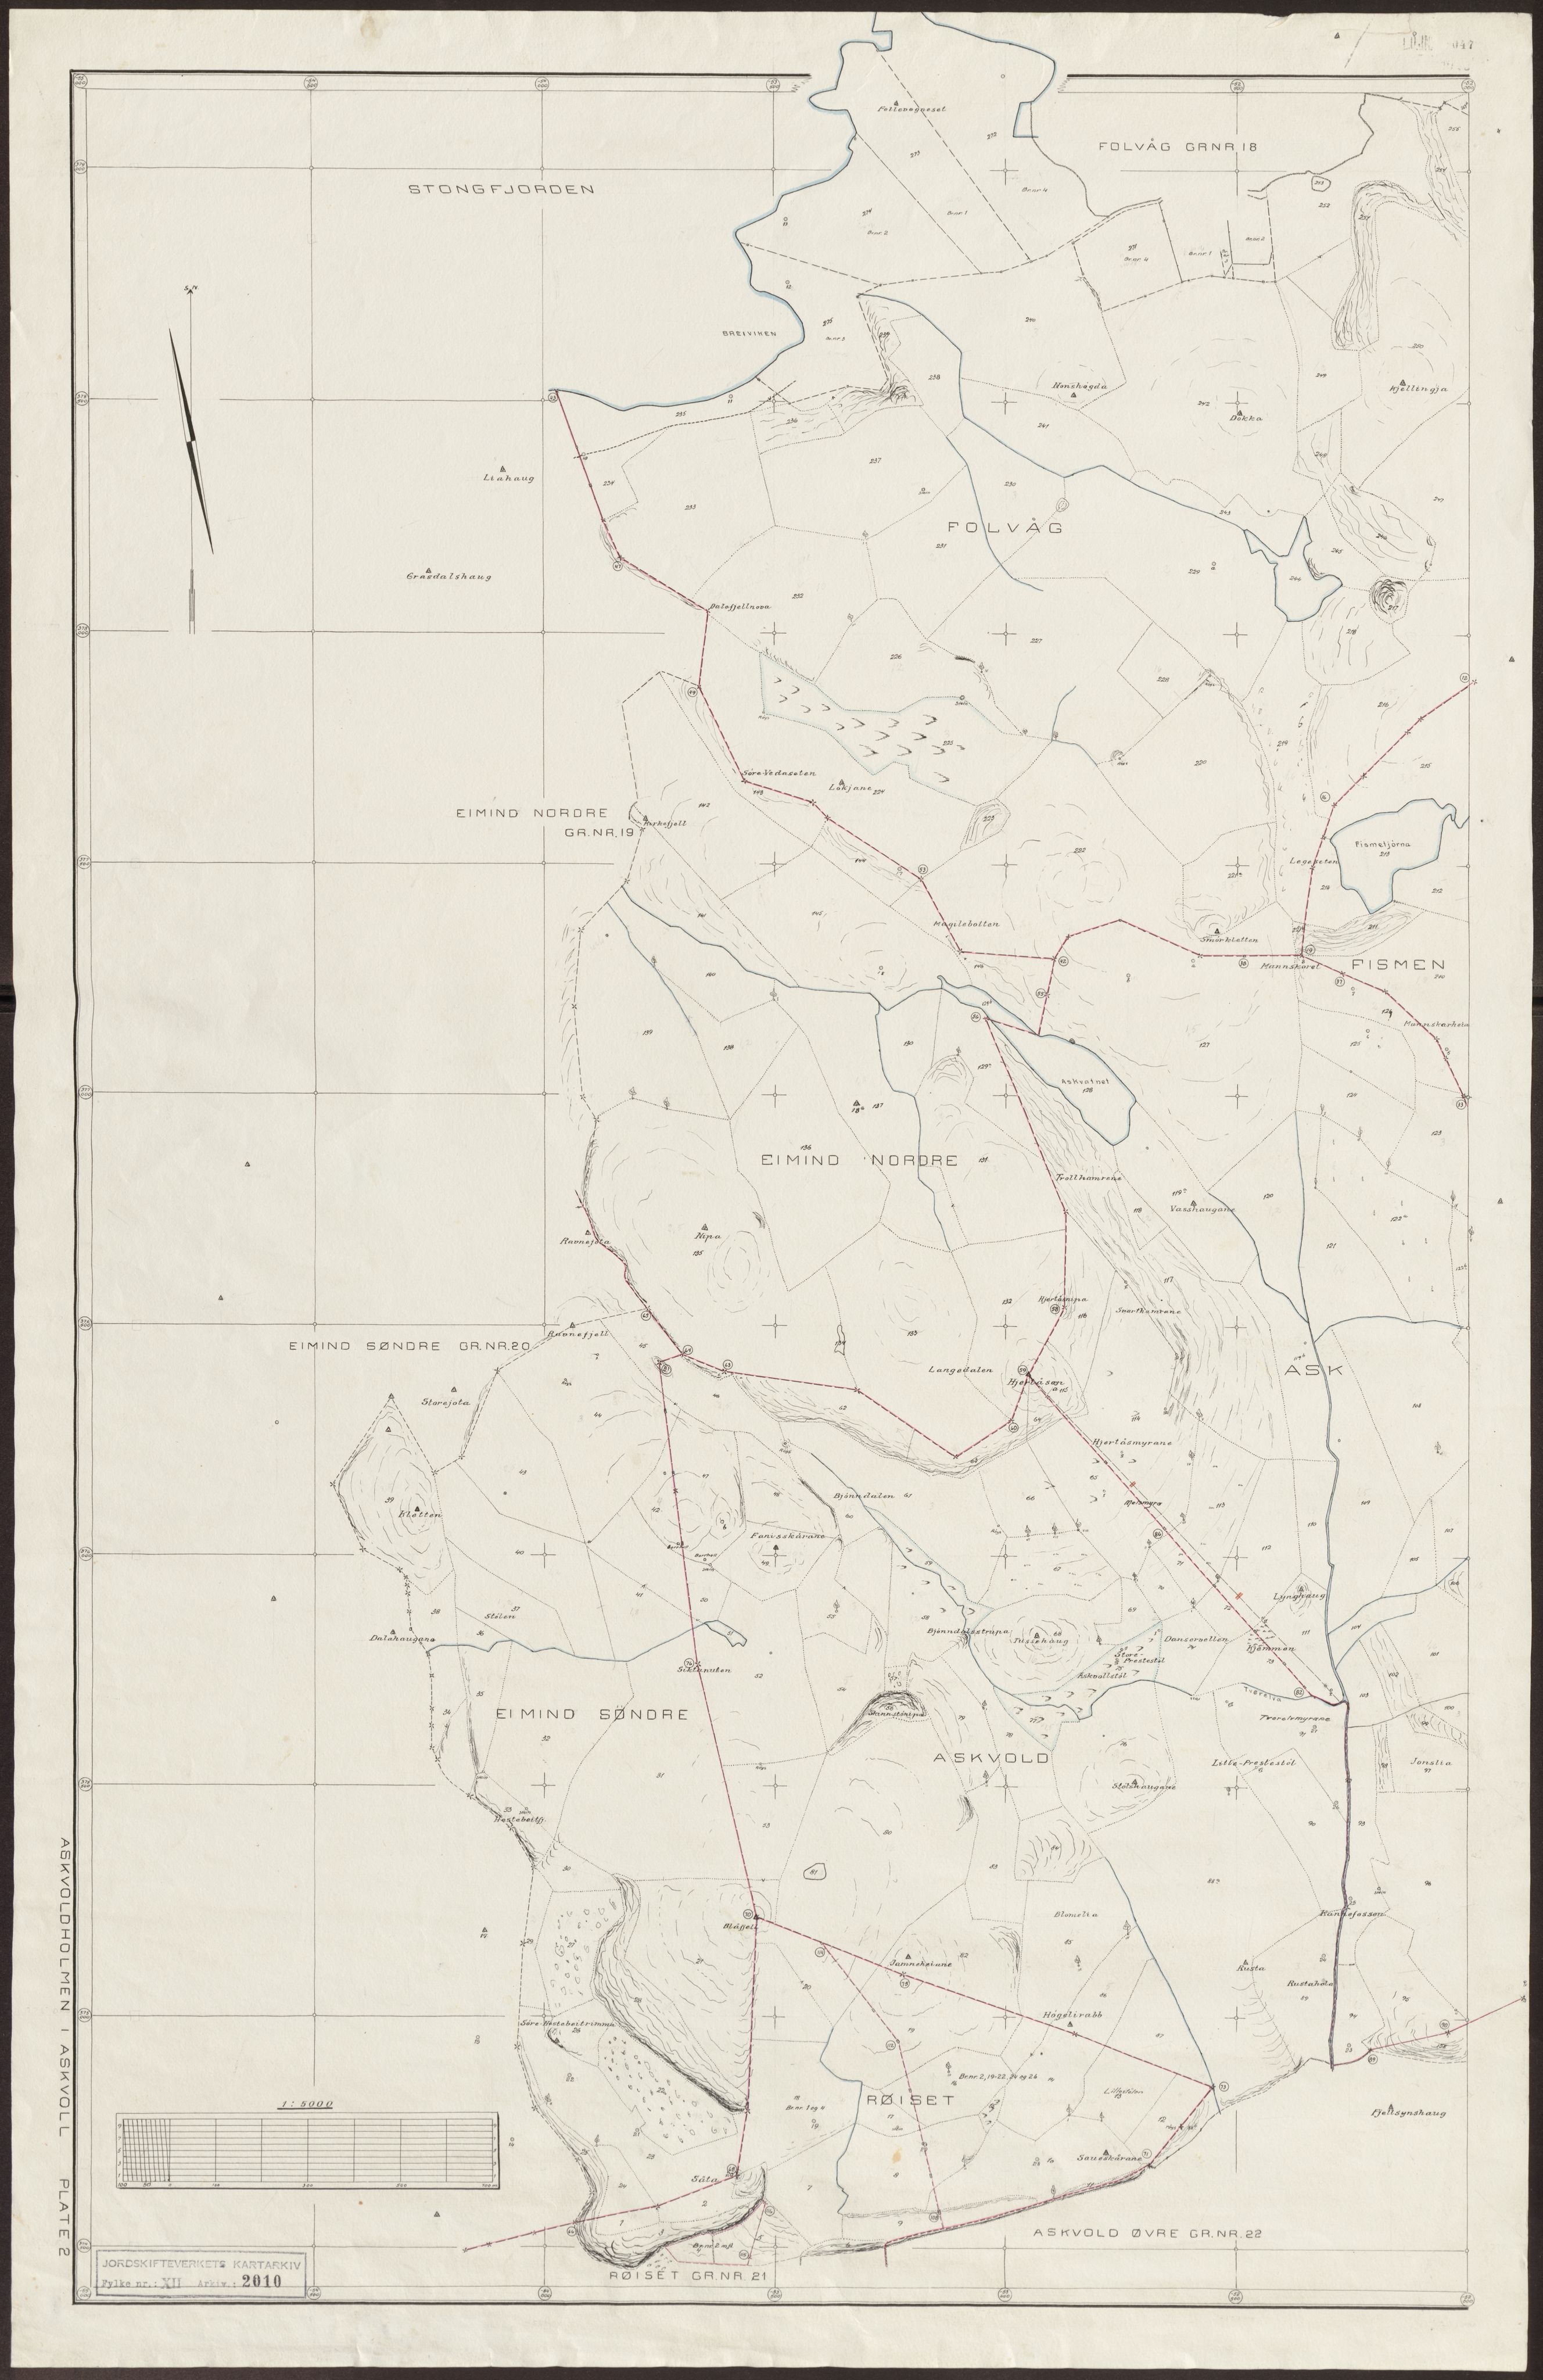 Jordskifteverkets kartarkiv, RA/S-3929/T, 1859-1988, p. 2421